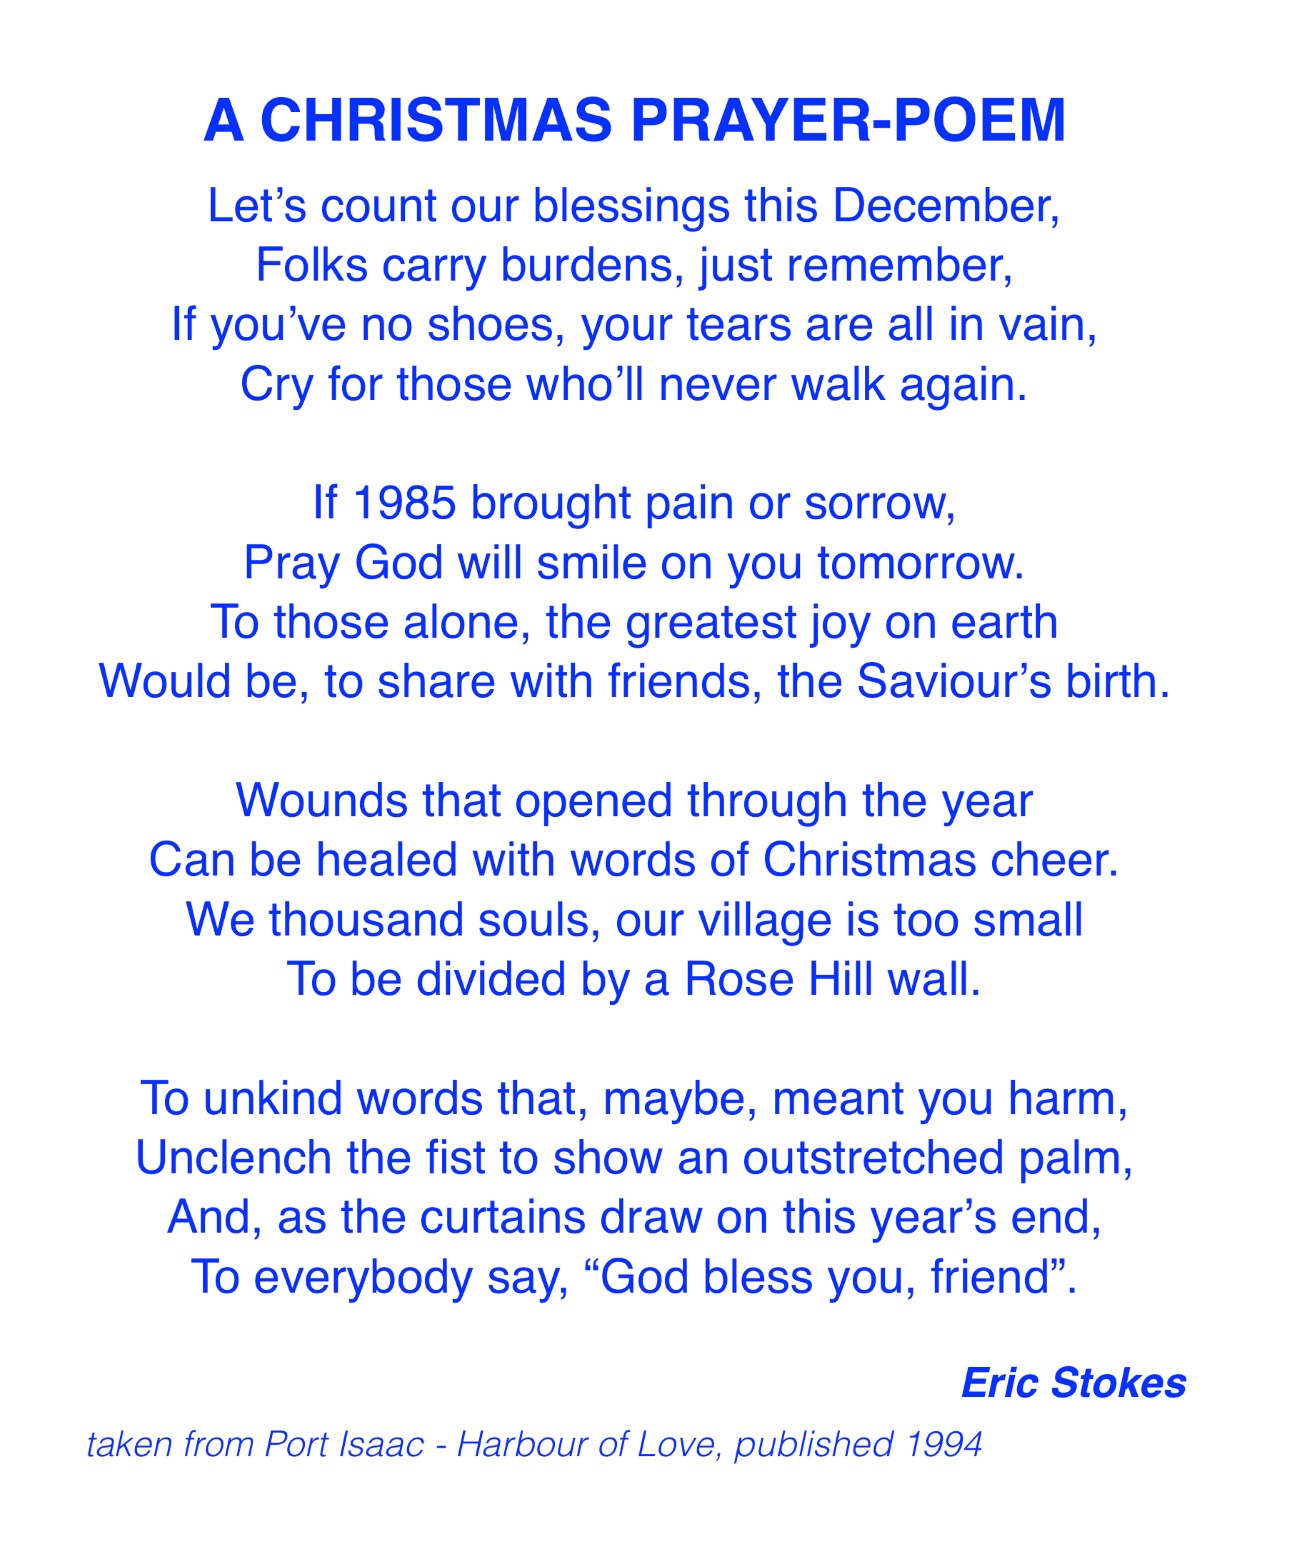 A Christmas Prayer-Poem